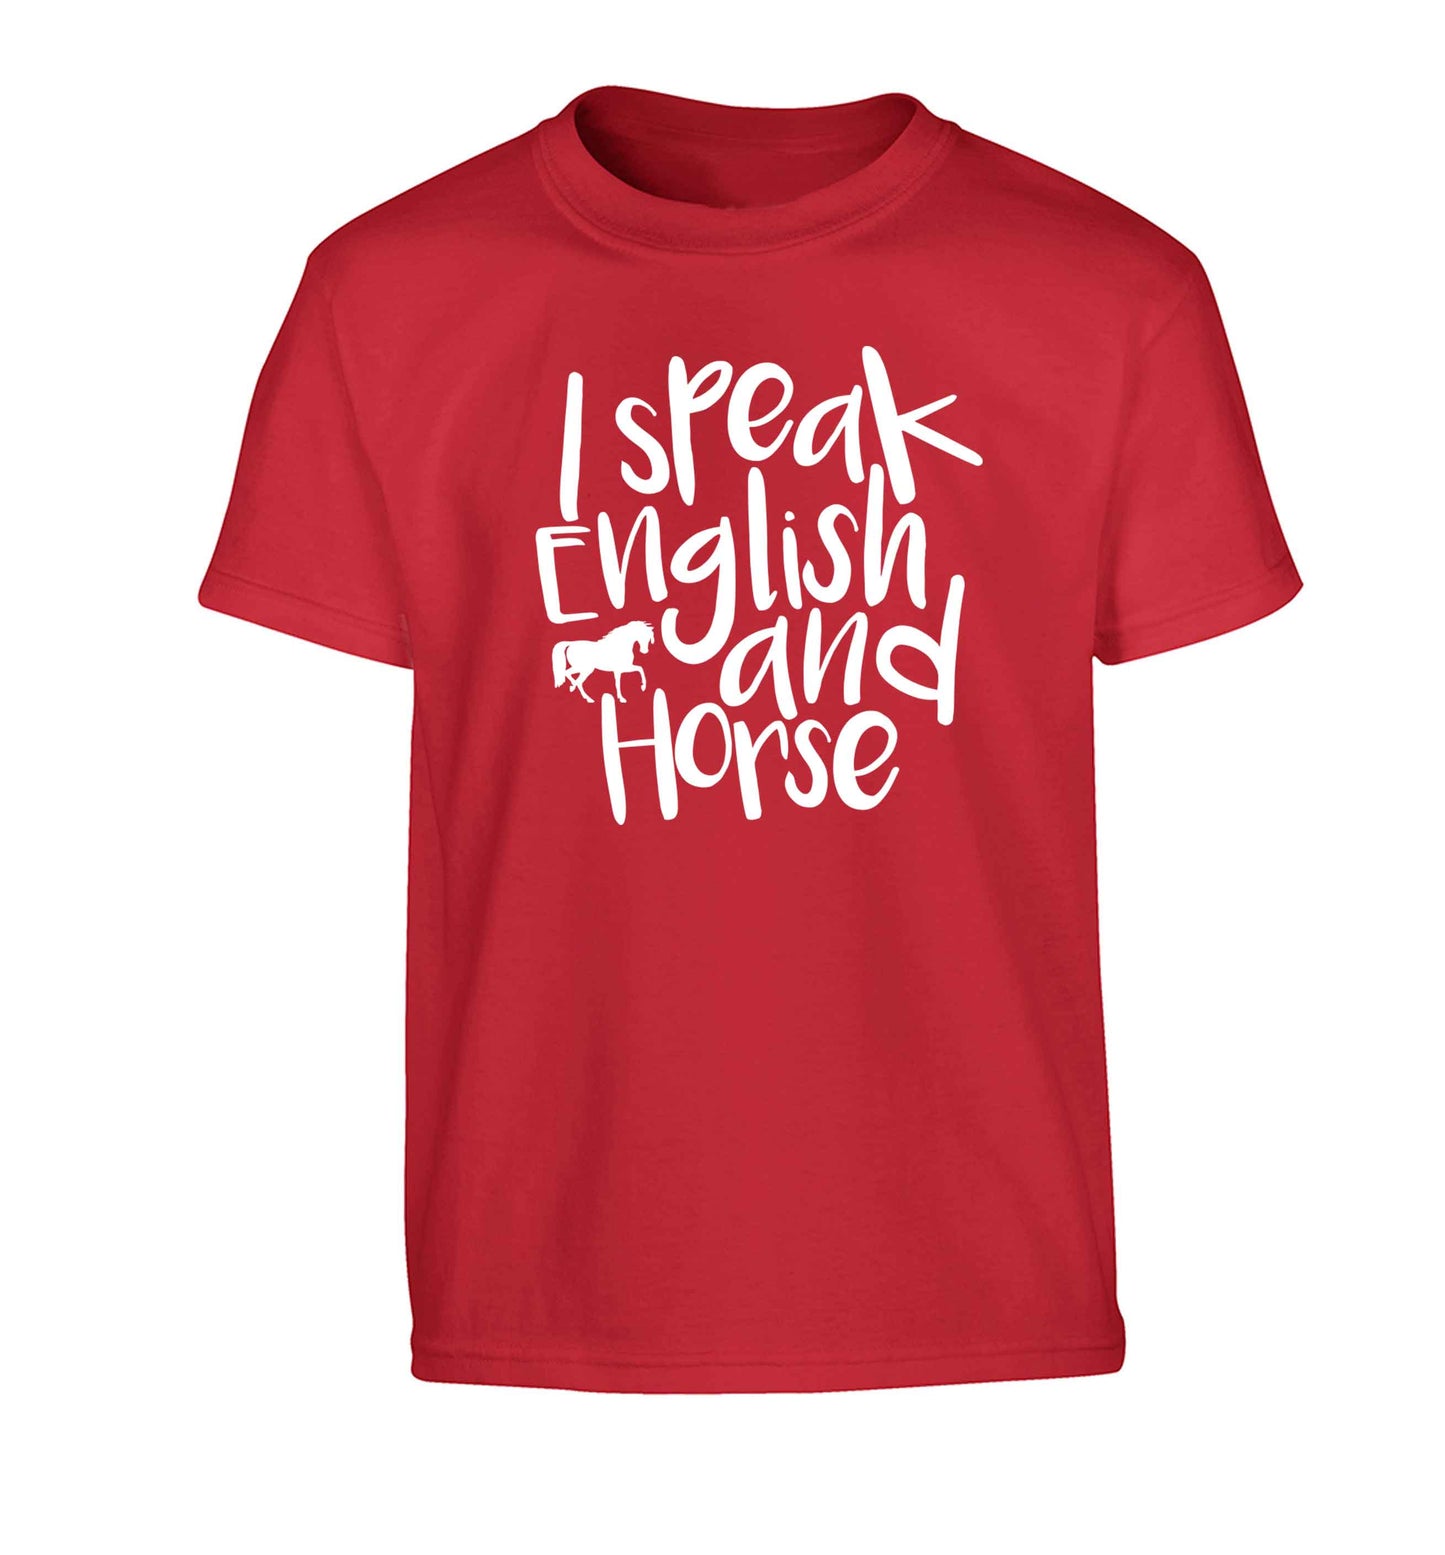 I speak English and horse Children's red Tshirt 12-13 Years